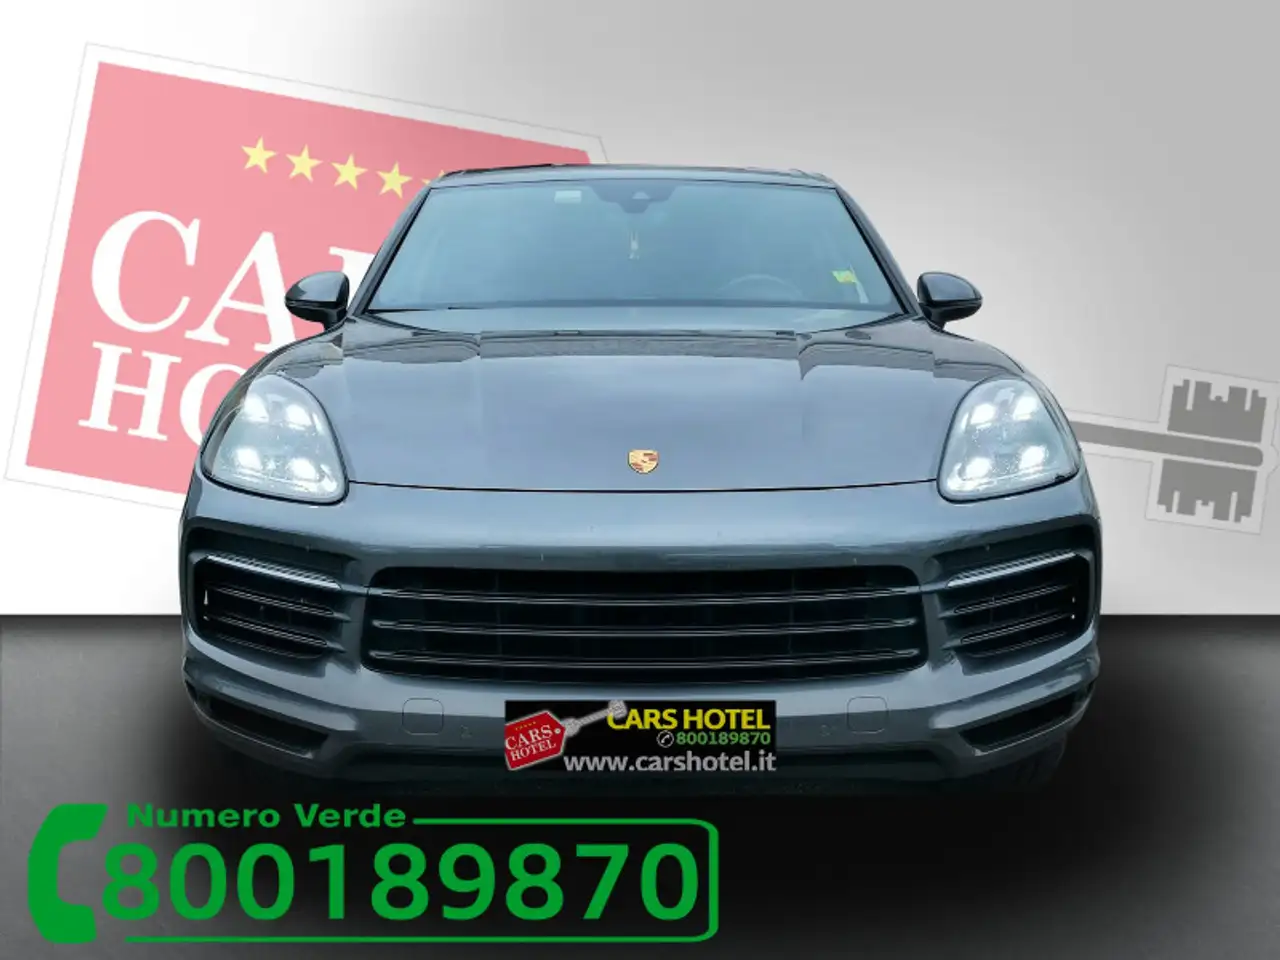 PORSCHE Cayenne 3.0 V6 Service Porsche / Iva Deducibile / Uni.Pro. Usata Benzina €54.950 - 9756808